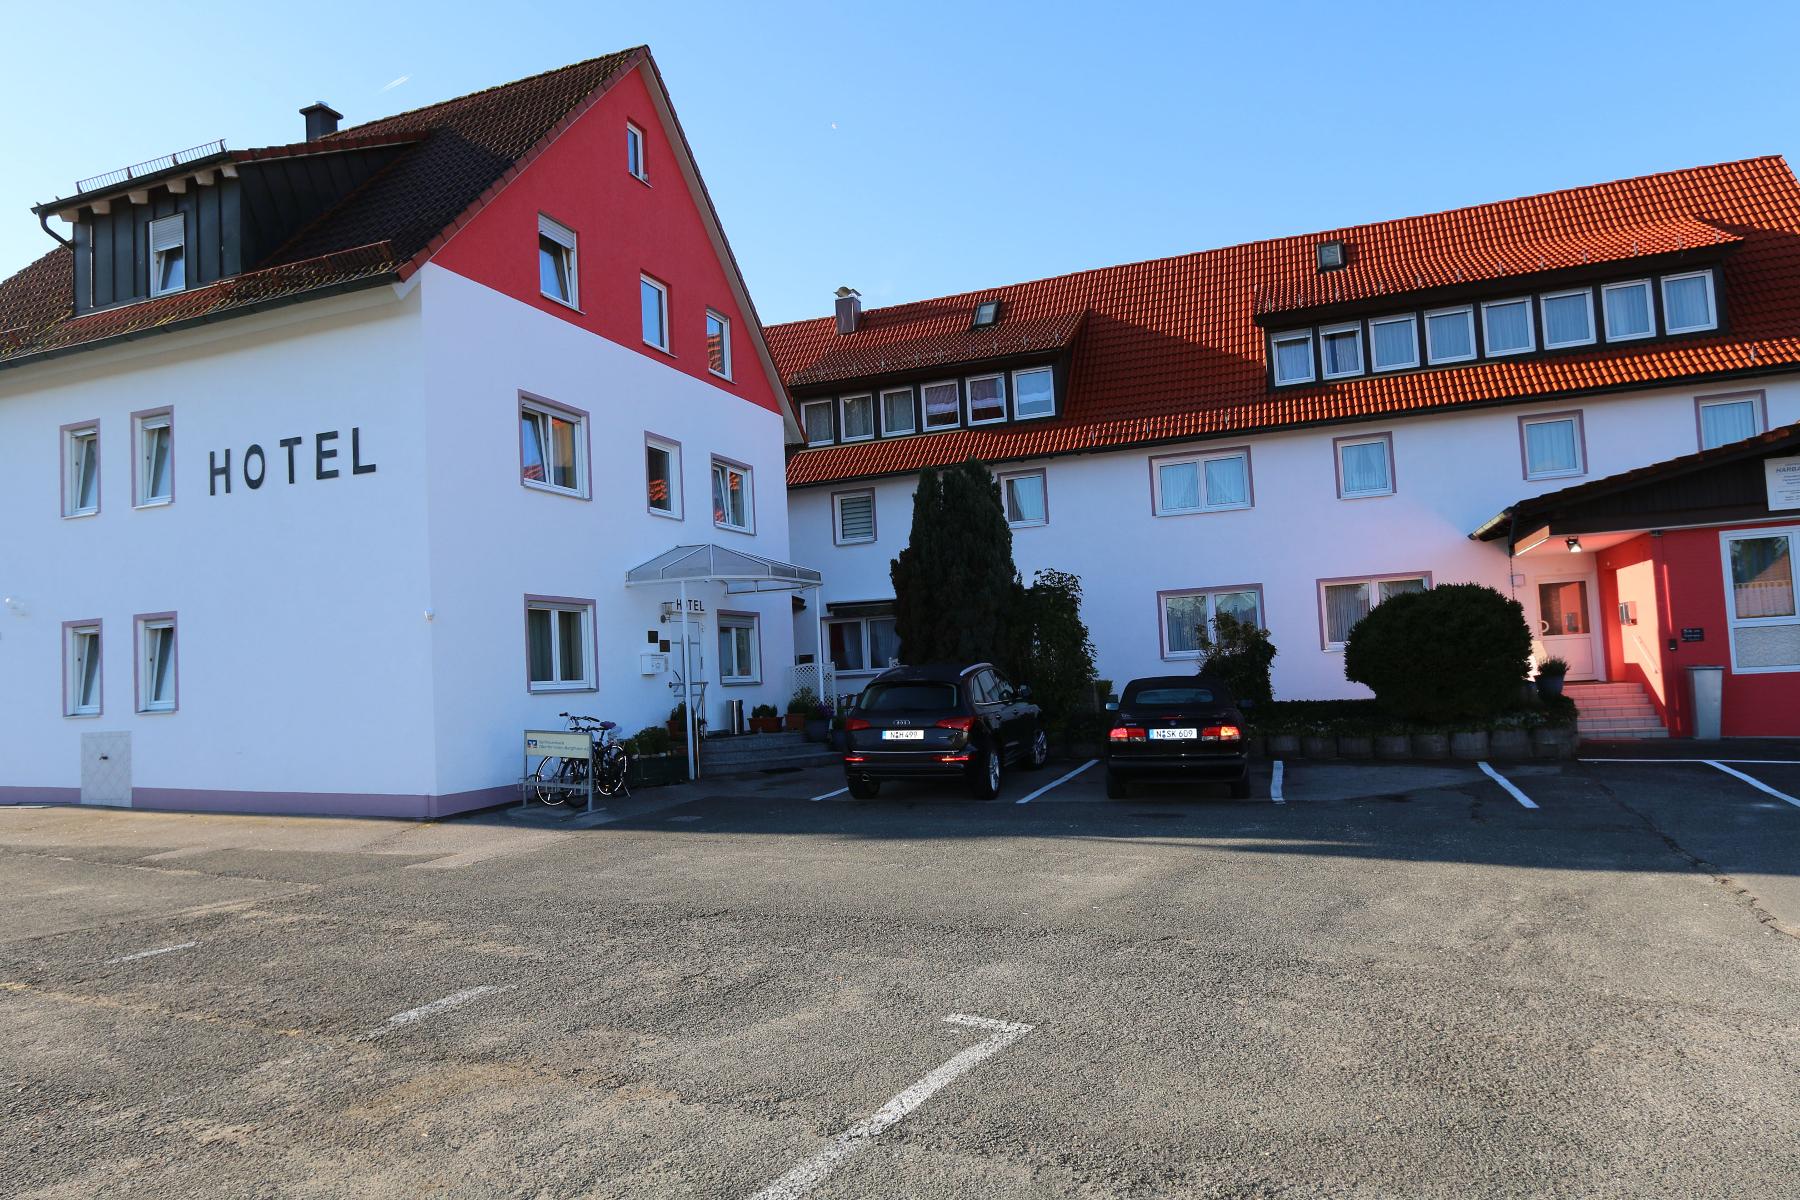 Dieses ruhig gelegene 3-Sterne-Hotel befindet sich nur 3km von der Gemeinde Schwarzenbruck und eine 20-minütige Fahrt von Nürnberg entfernt. Das Hotel Harbauer verfügt über großzügige Zimmer, die mit Liebe zum Detail stilvoll modern eingerichtet sind.Ein reichhaltiges Frühstücksbuffet...